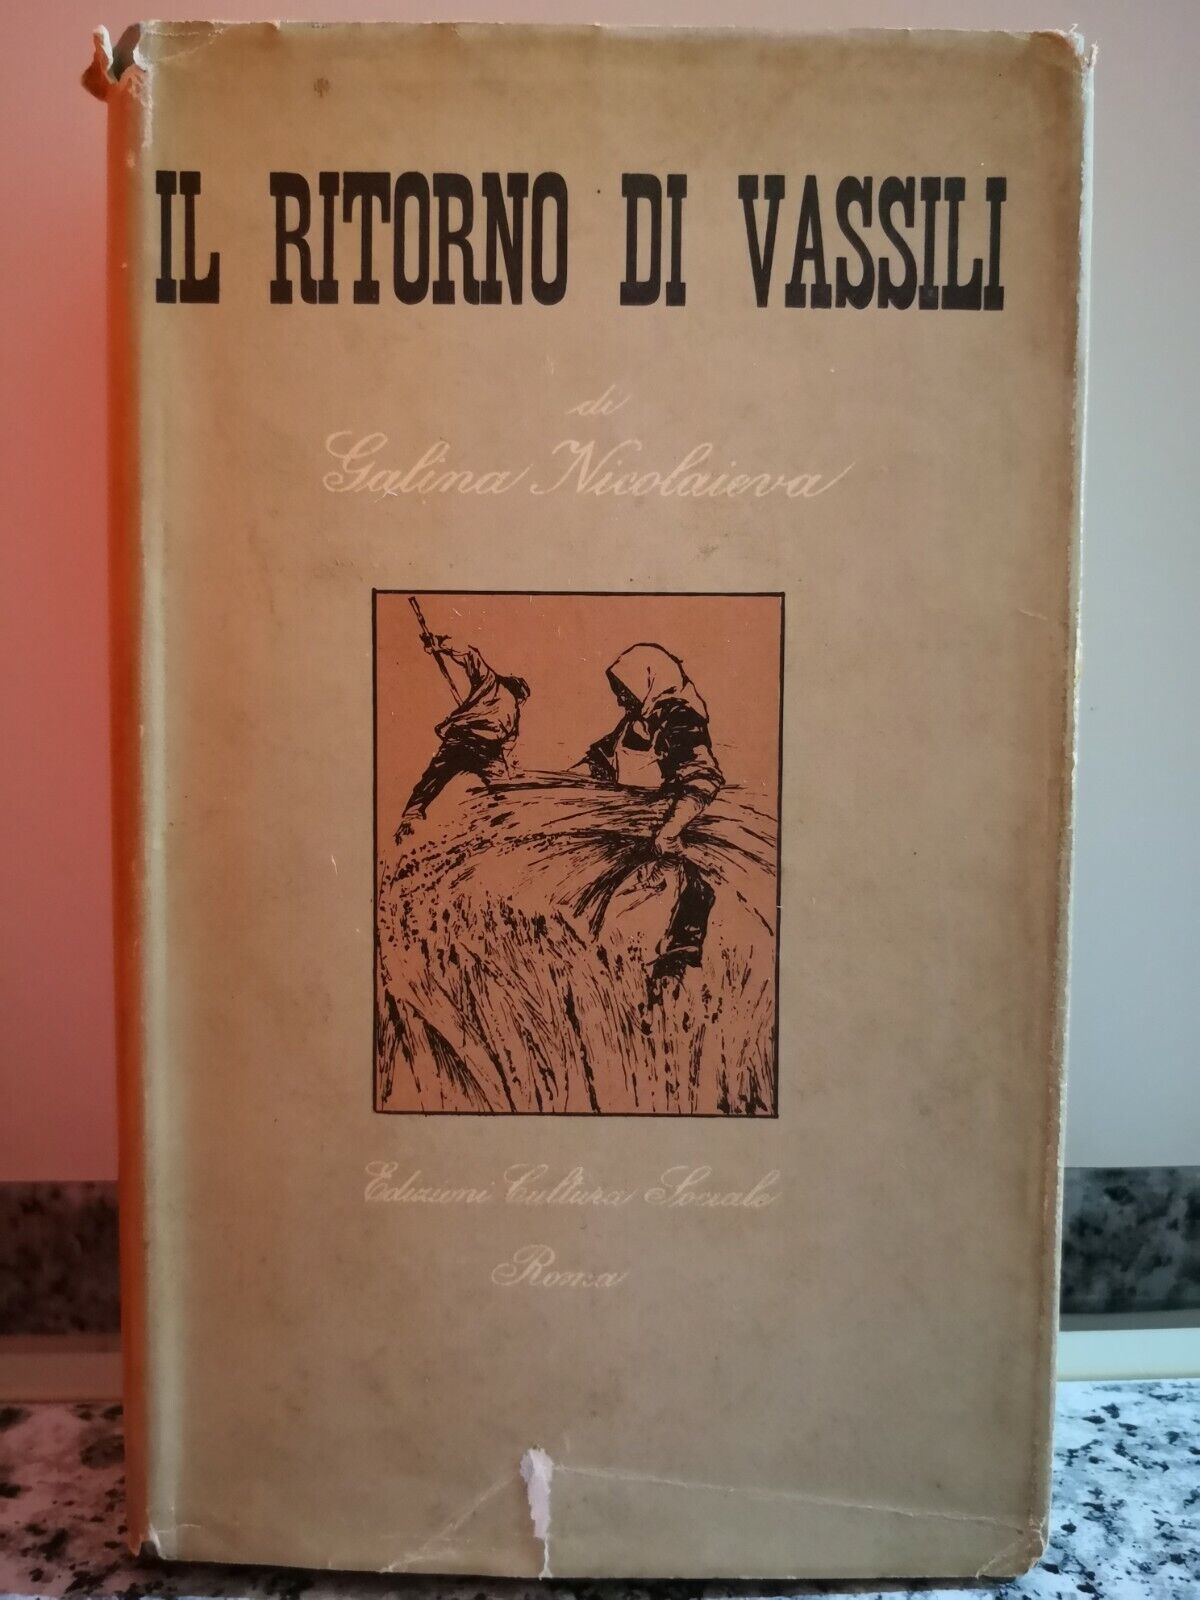  Il ritorno di Vassili  di Galina Nicolaieva,  1955, Edizioni Di Cultura S. -F